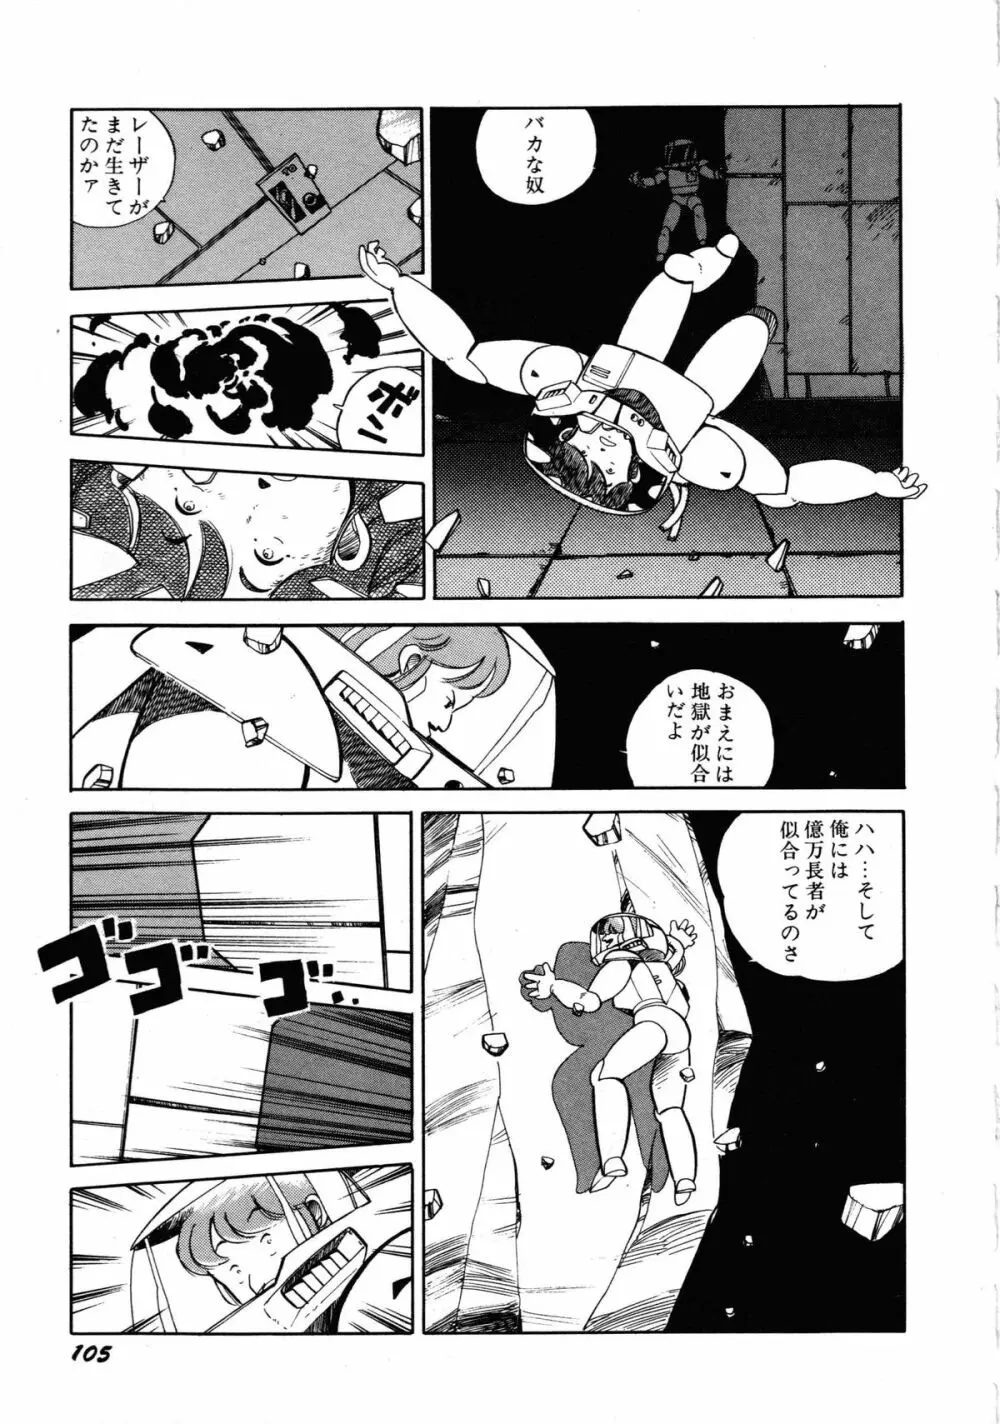 ロボット&美少女傑作選 レモン・ピープル1982-1986 109ページ